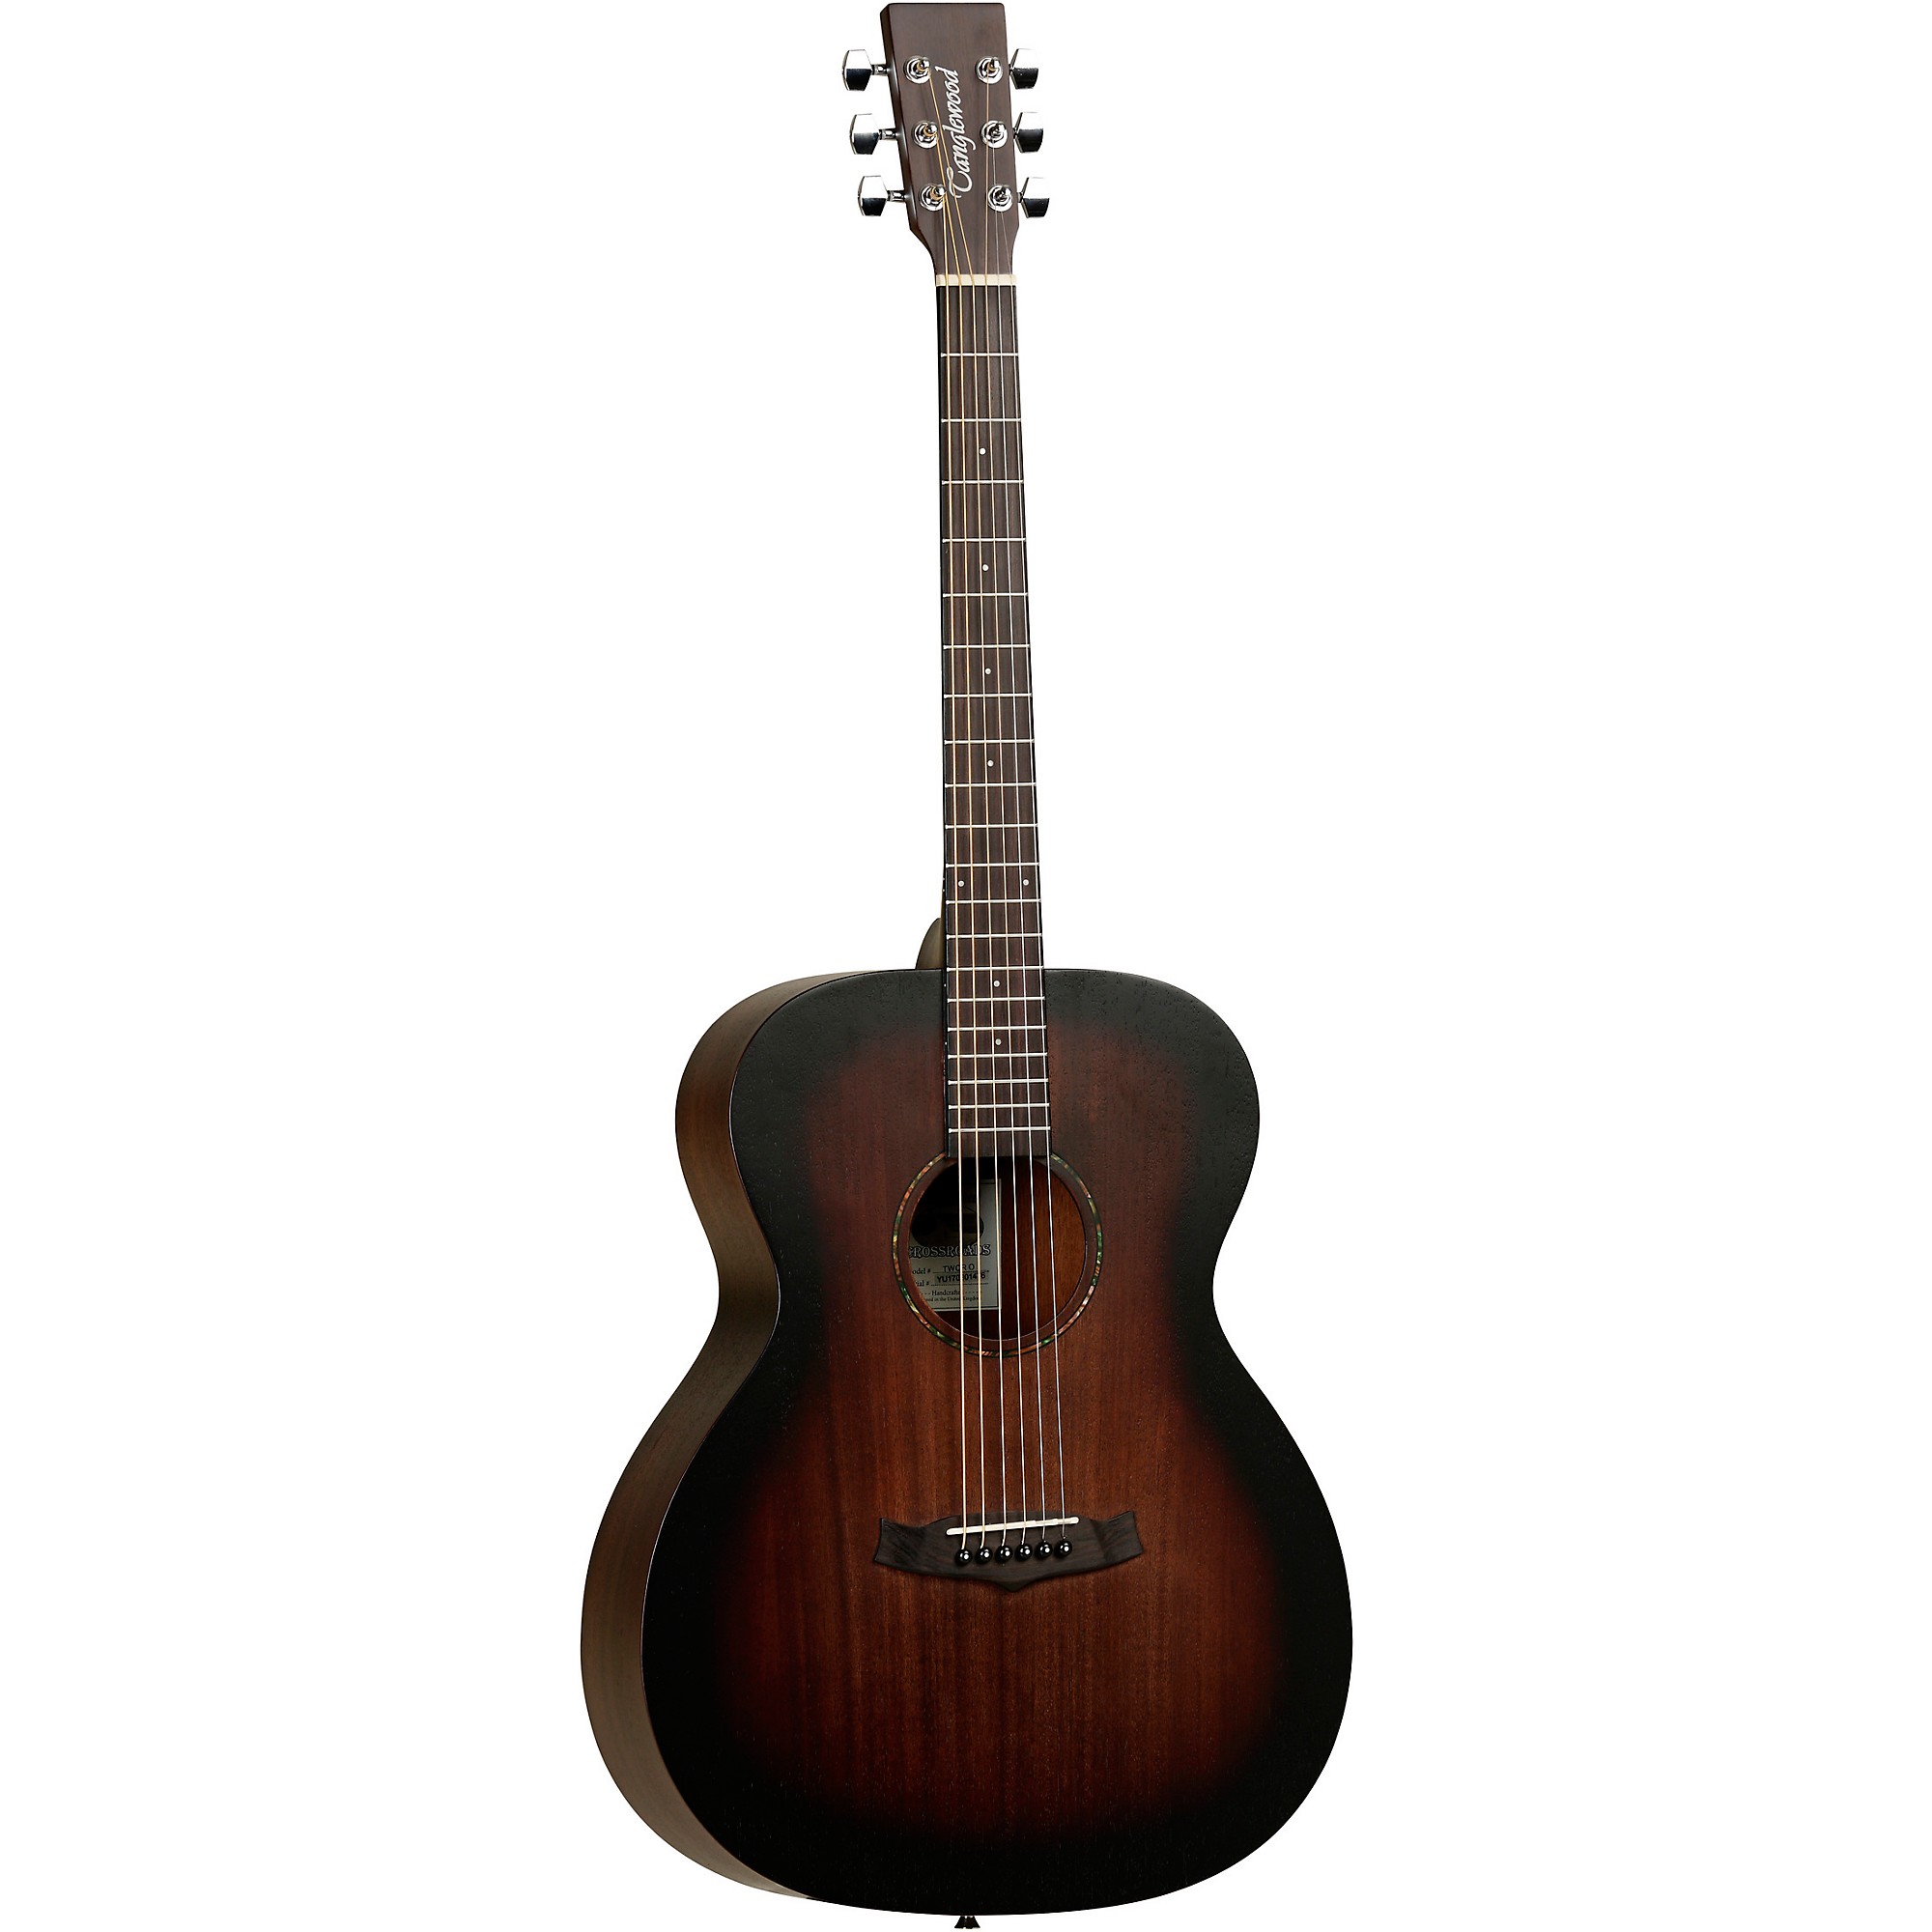 Акустическая гитара Tanglewood TWCR O Crossroads Folk Size из красного дерева с верхом из красного дерева Whisky Barrel Burst